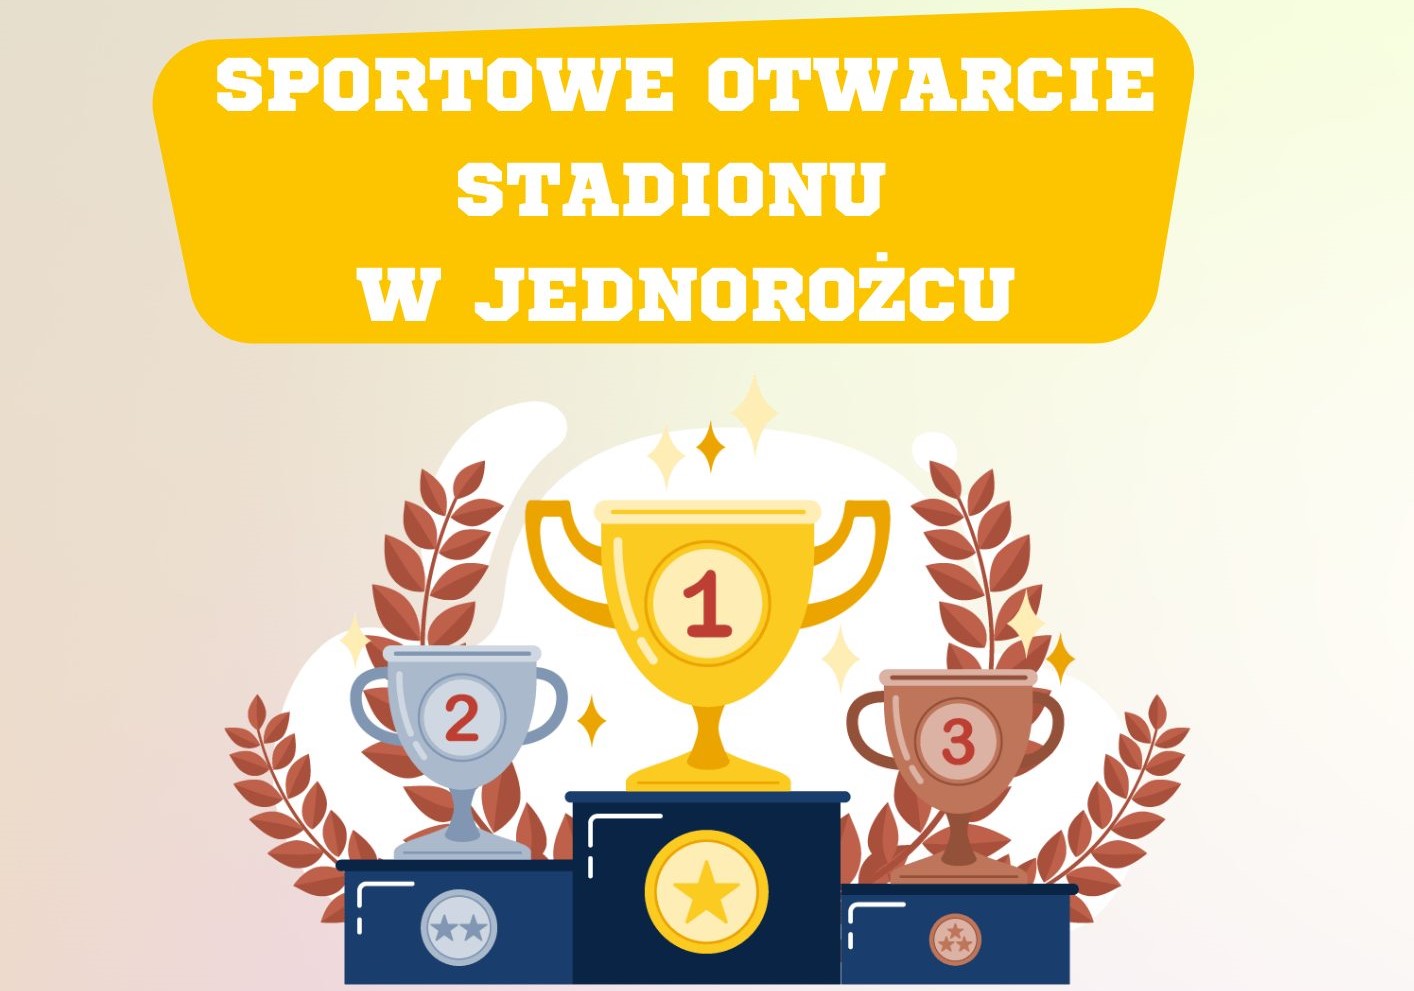 Grafika informująca o sportowym otwarciu stadionu w Jednorożcu. Treść w artykule.